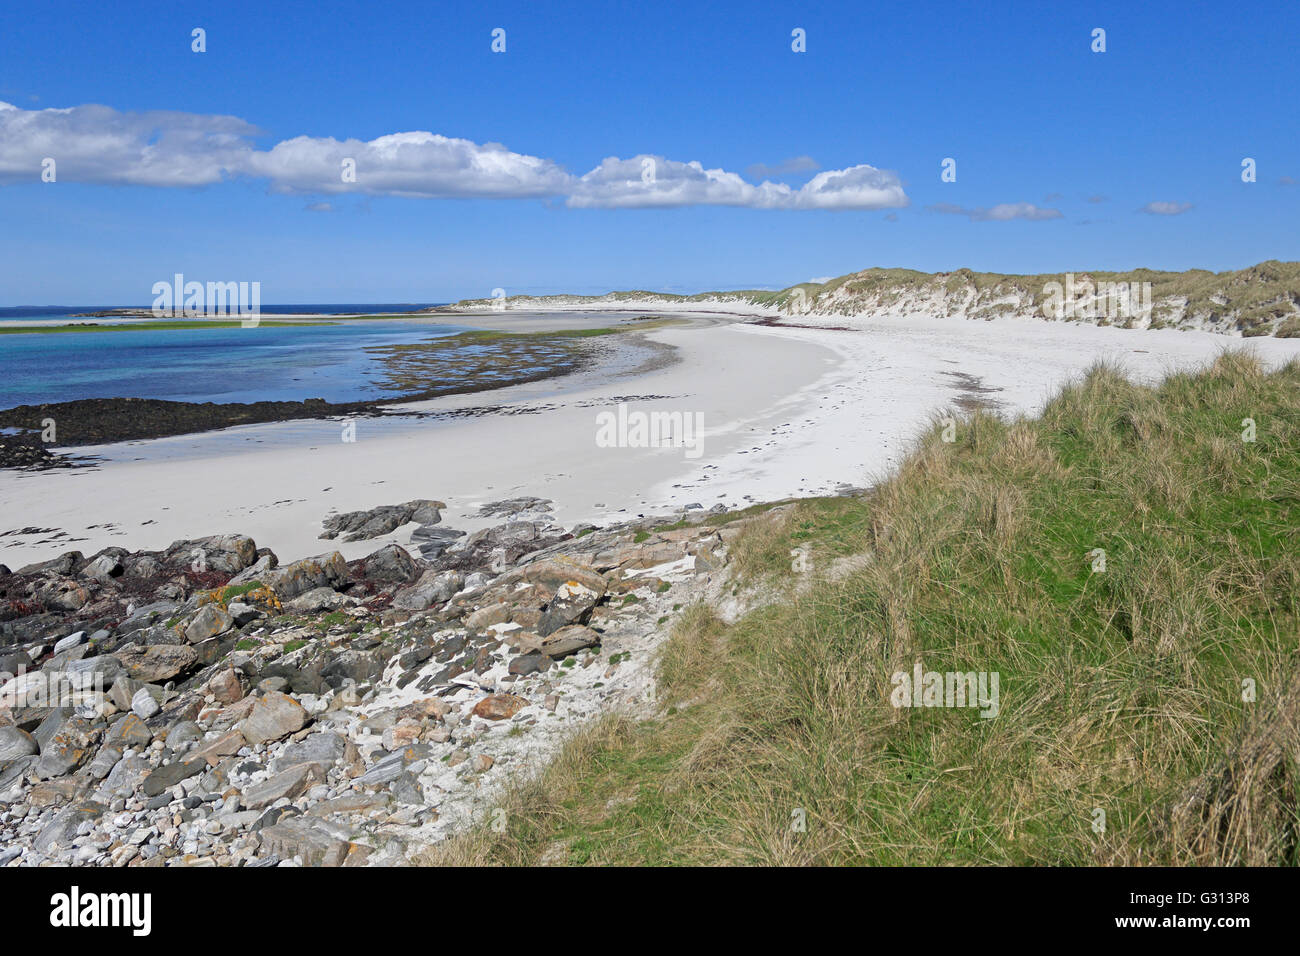 Spiaggia di sabbia bianca sulle isole Monach nelle Ebridi Esterne in una giornata di sole Foto Stock